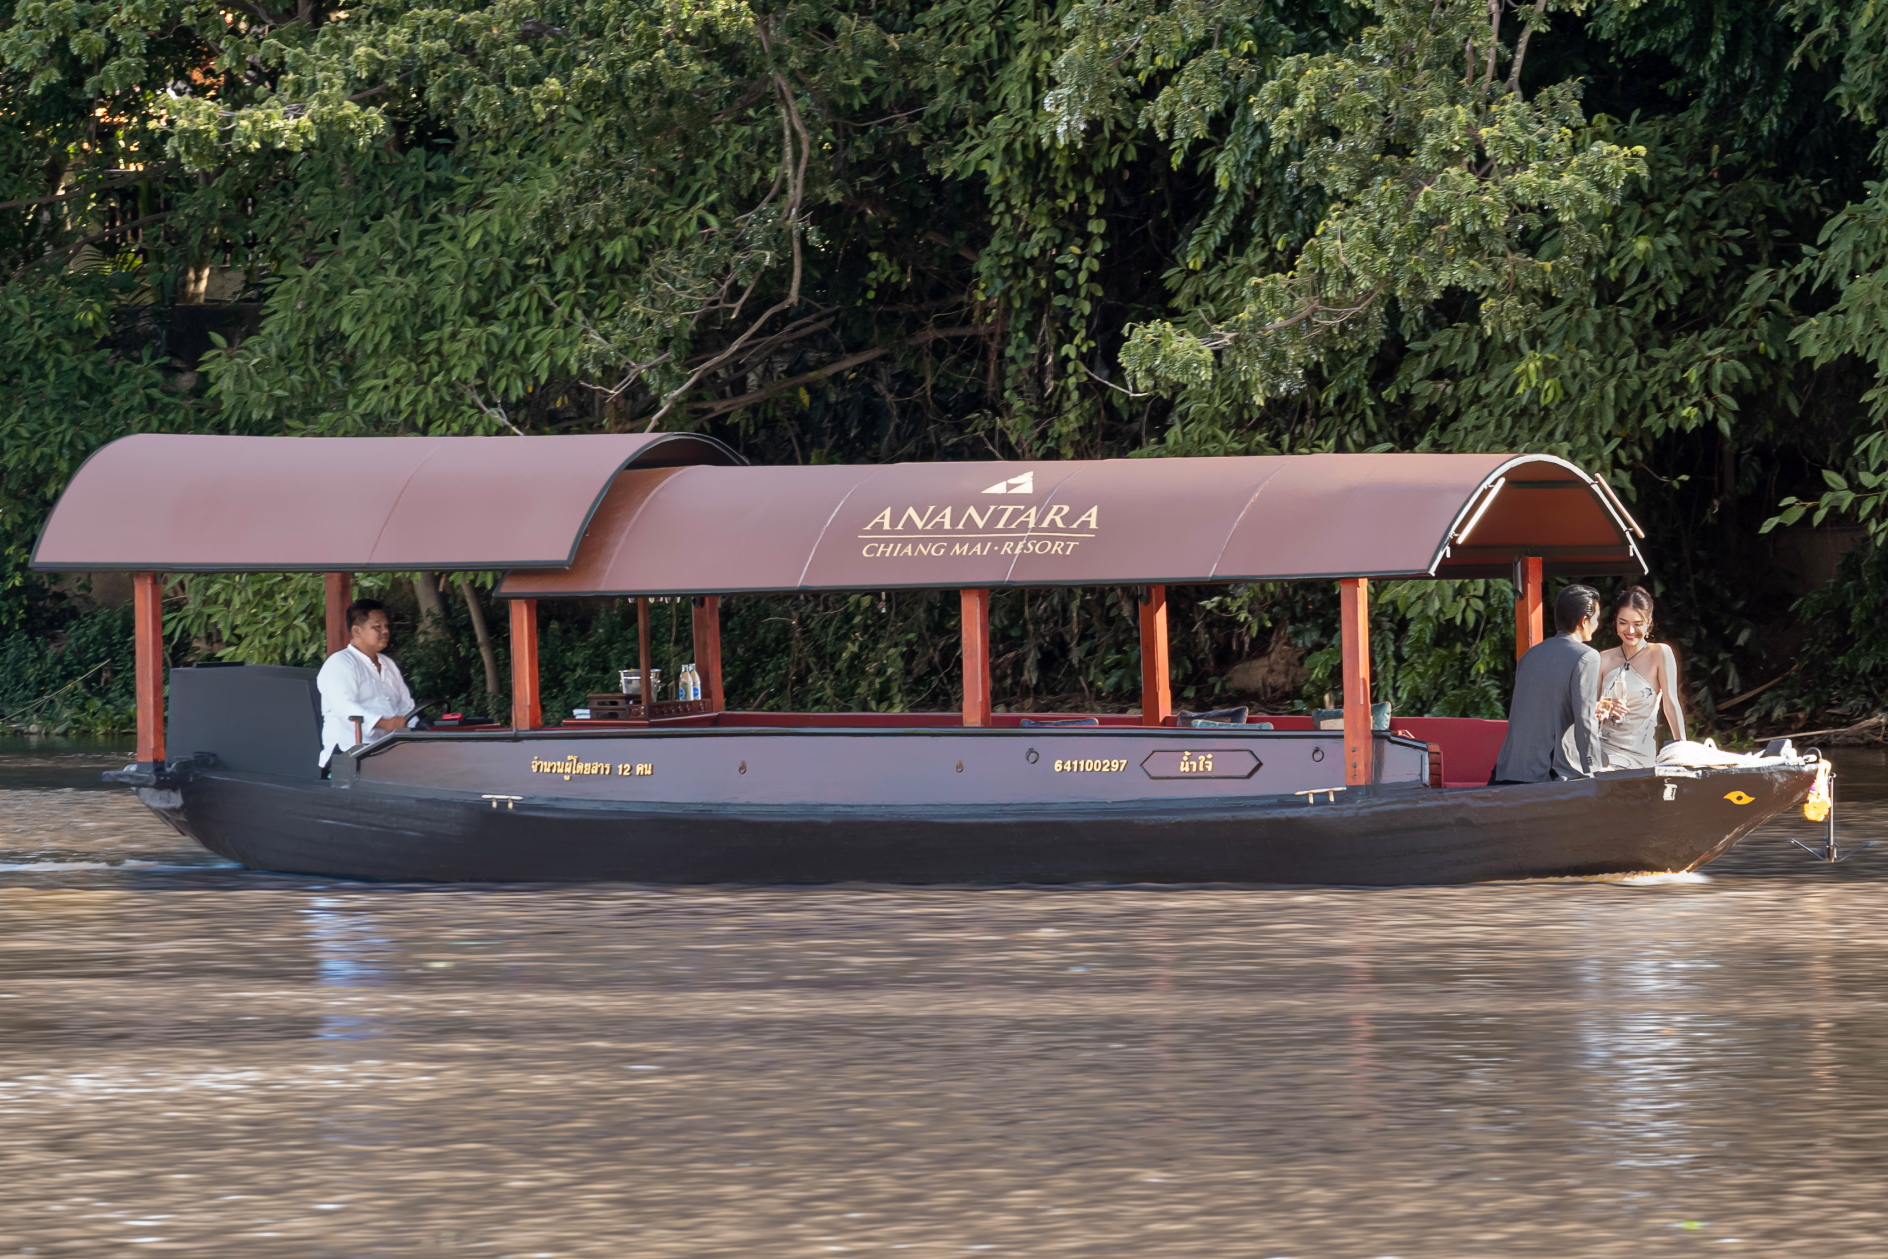 Croisière sur la rivière Nam Jai Ping d'Anantara Chiang Mai.  Cliquez pour agrandir.